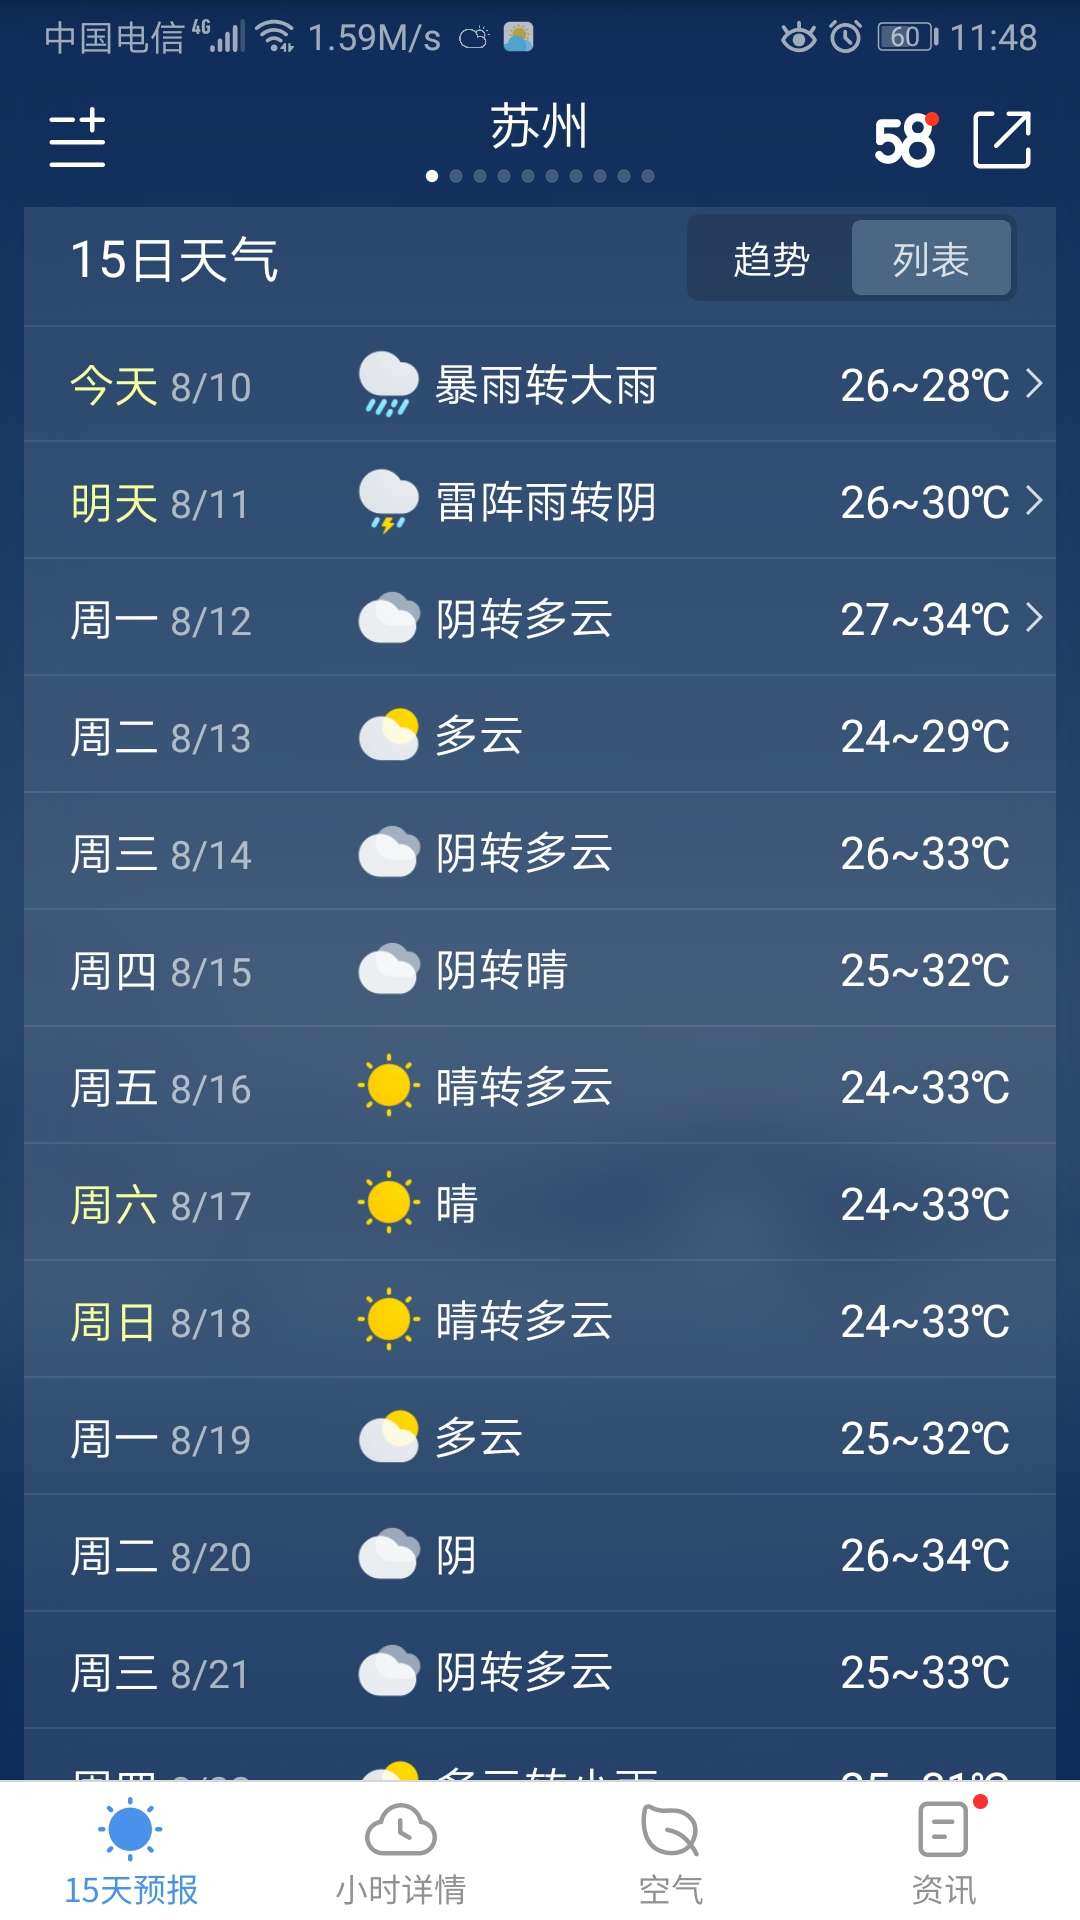 1330号台风\"海燕\"未来48小时路径概率预报图_未来7天降水量预报小图_沧州未来30天预报